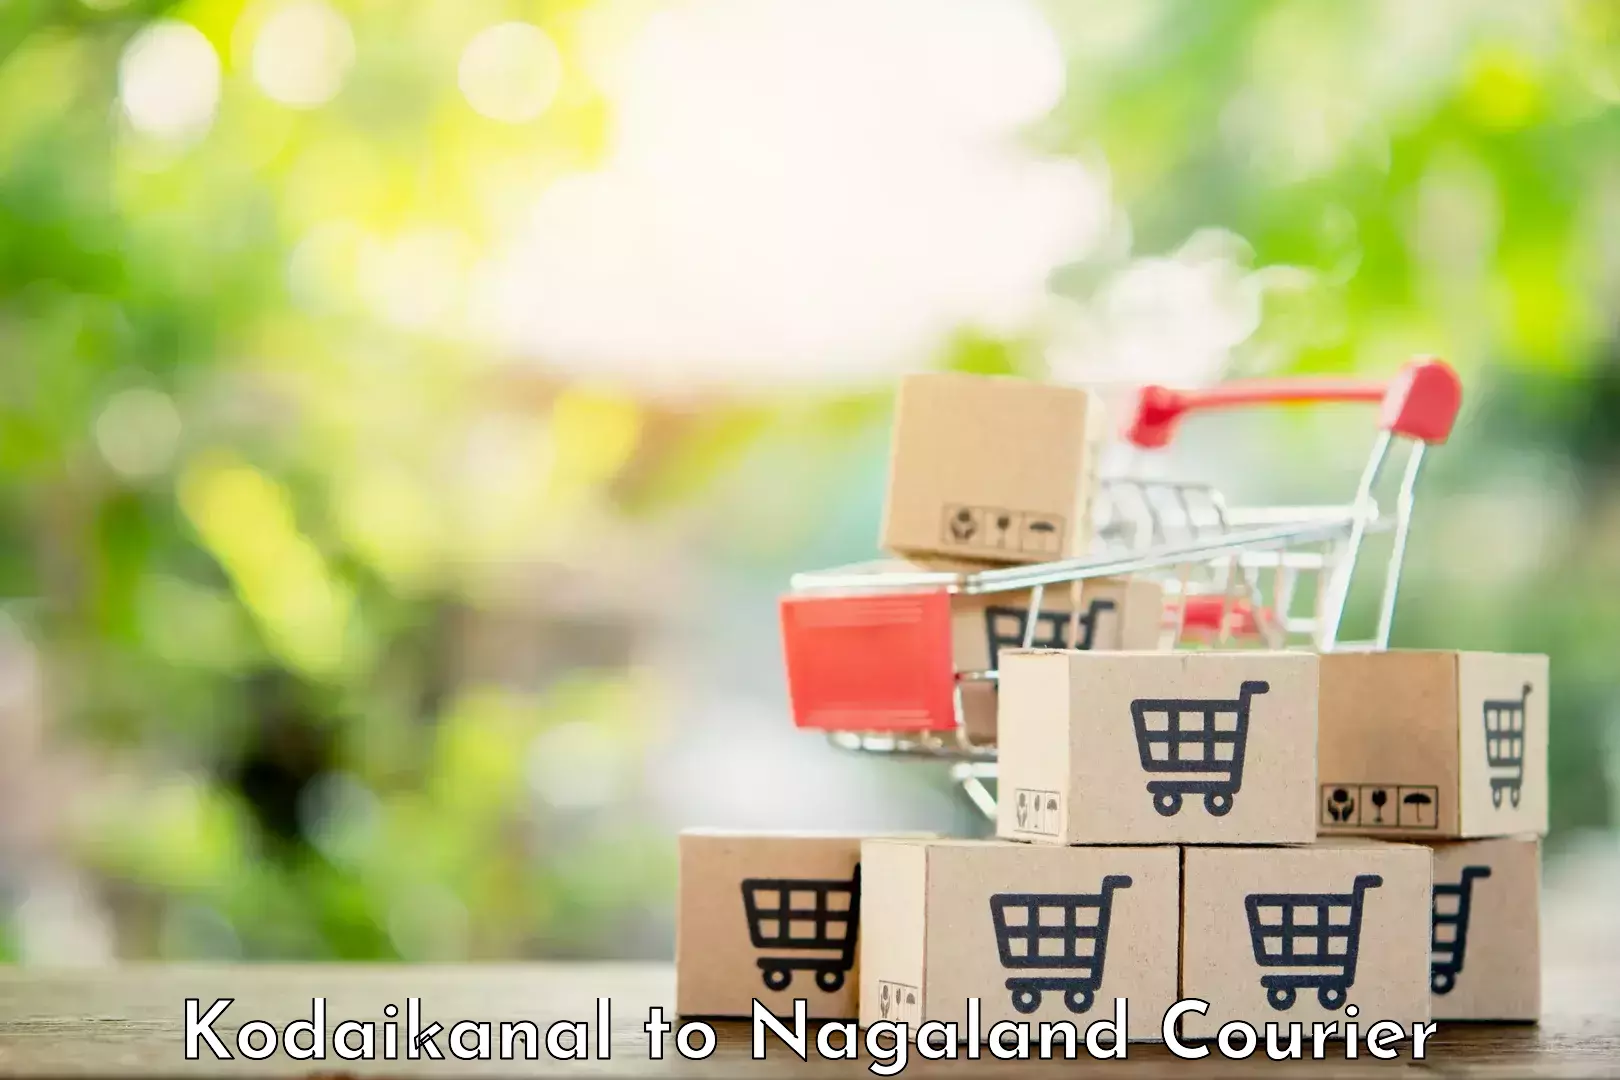 Reliable courier service Kodaikanal to Mon